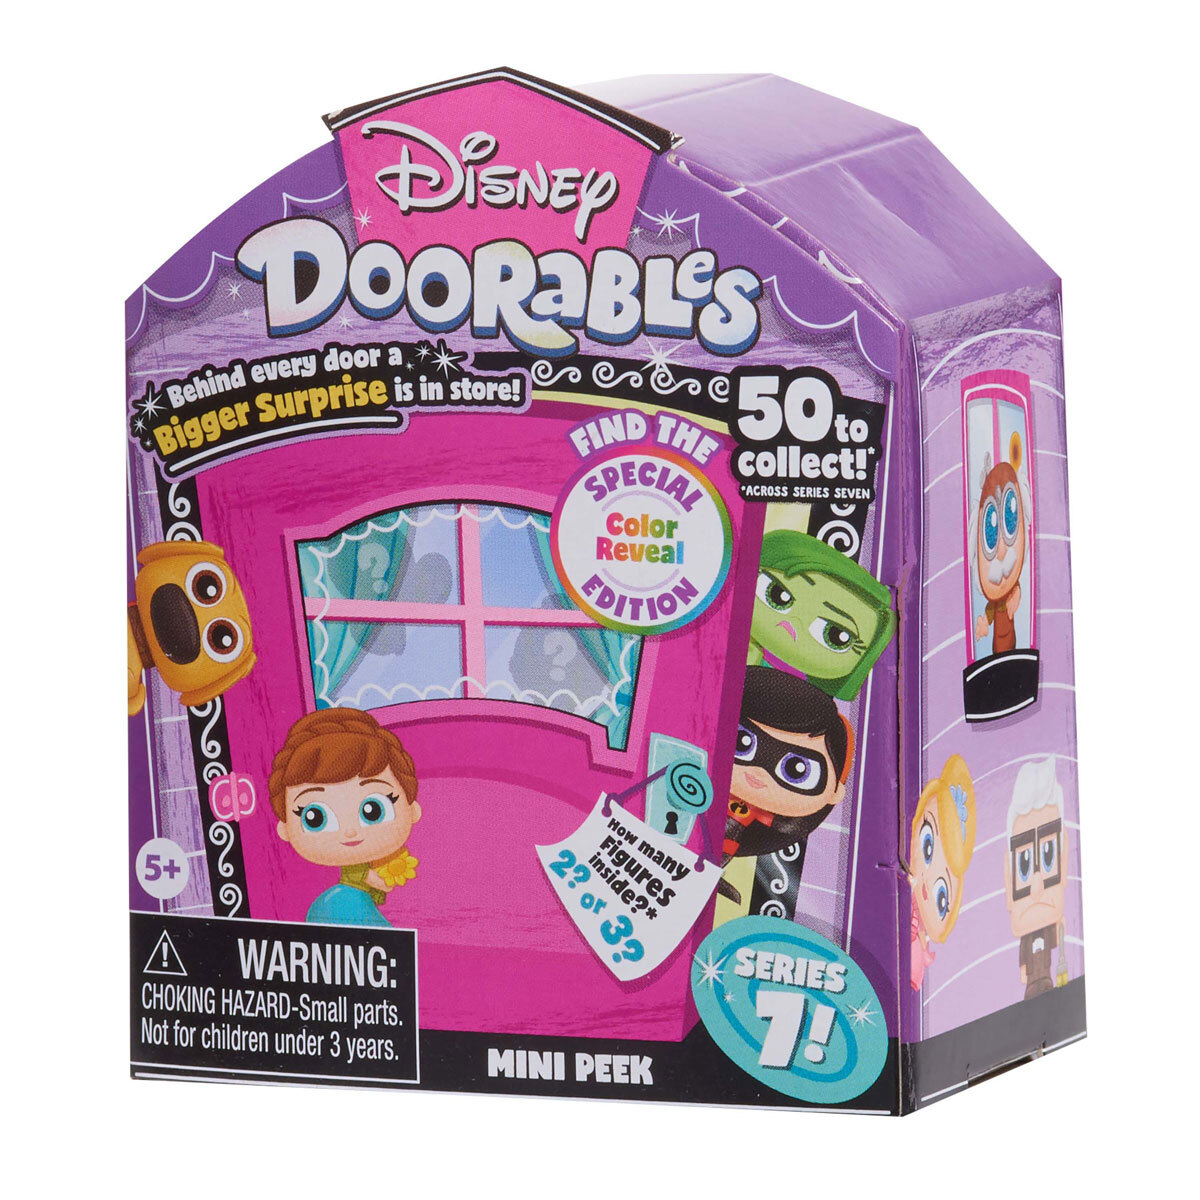 Disney Doorables Series 7